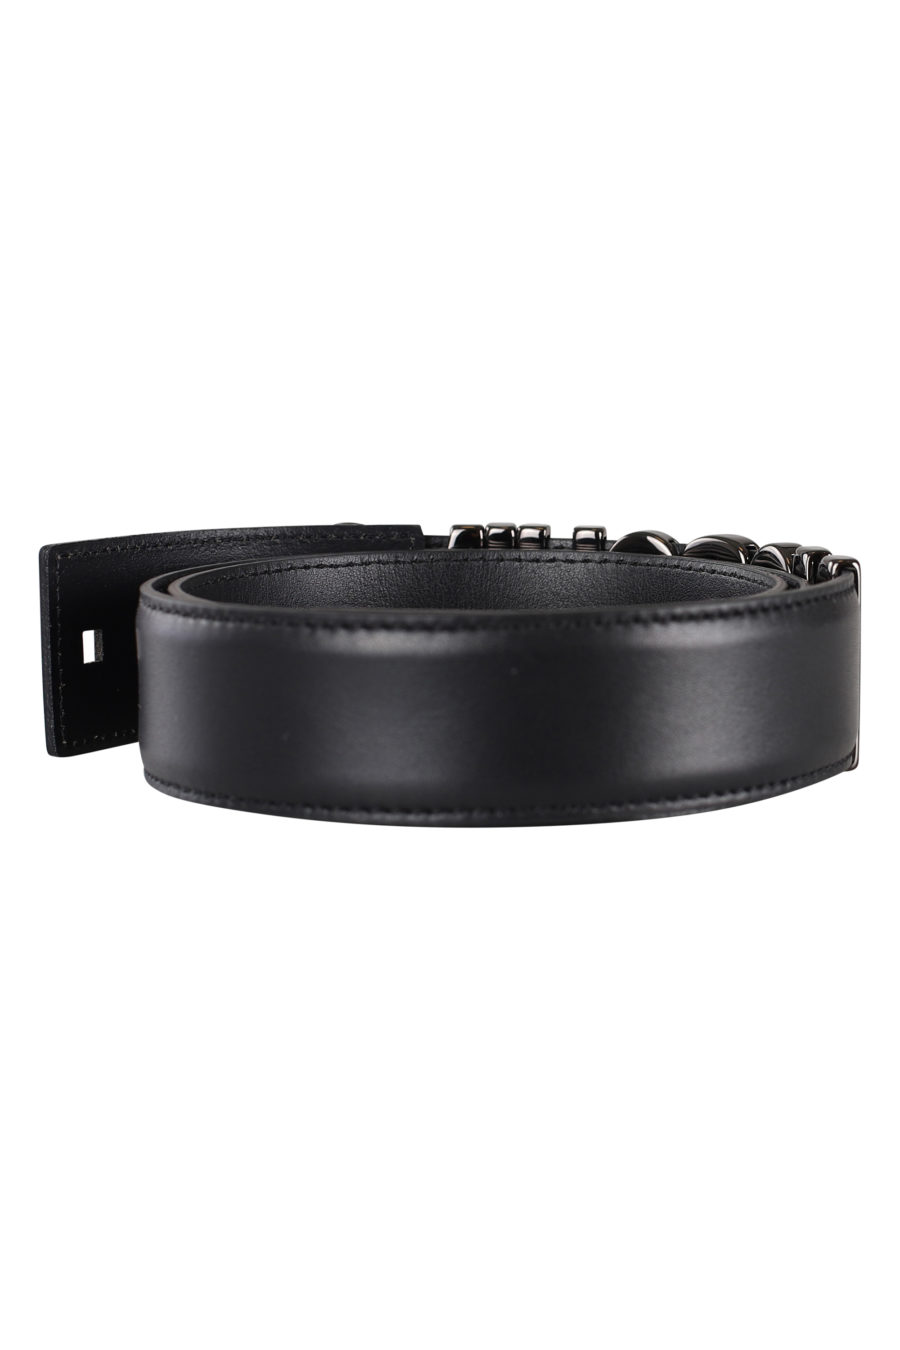 Cinturón negro con logo plateado en metal - IMG 0125